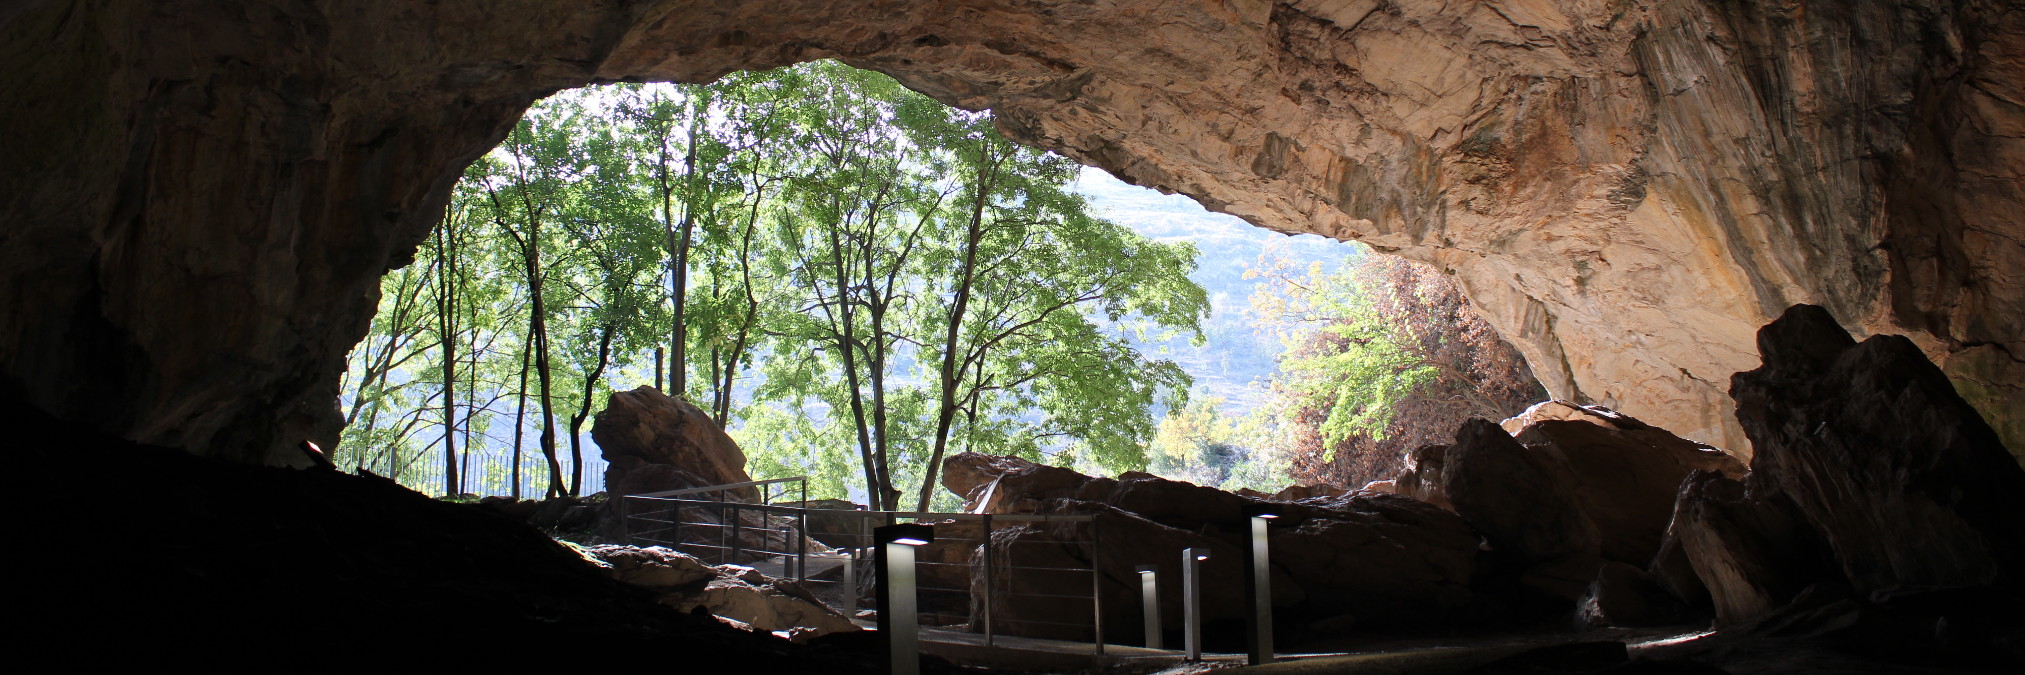 Пещера Равлича. Фото: Елена Арсениевич, CC BY-SA 3.0